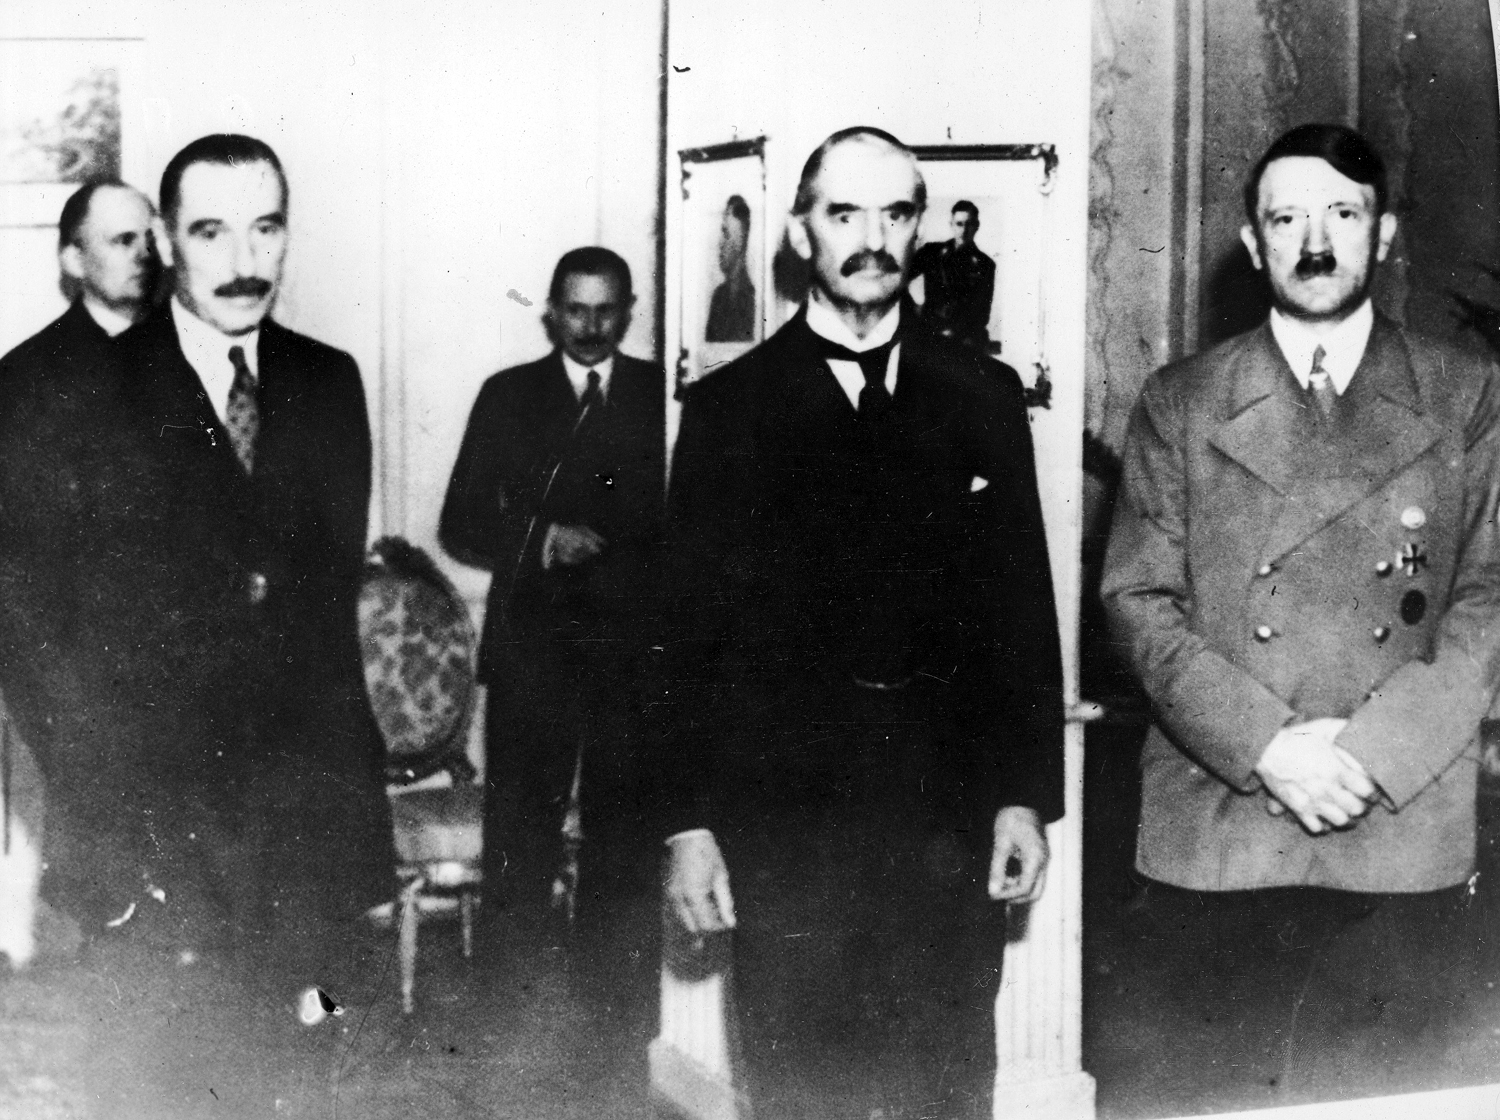 Adolf Hitler and Neville Chamberlain pose during their meeting in the Rheinhotel Dreesen in Bad Godesberg